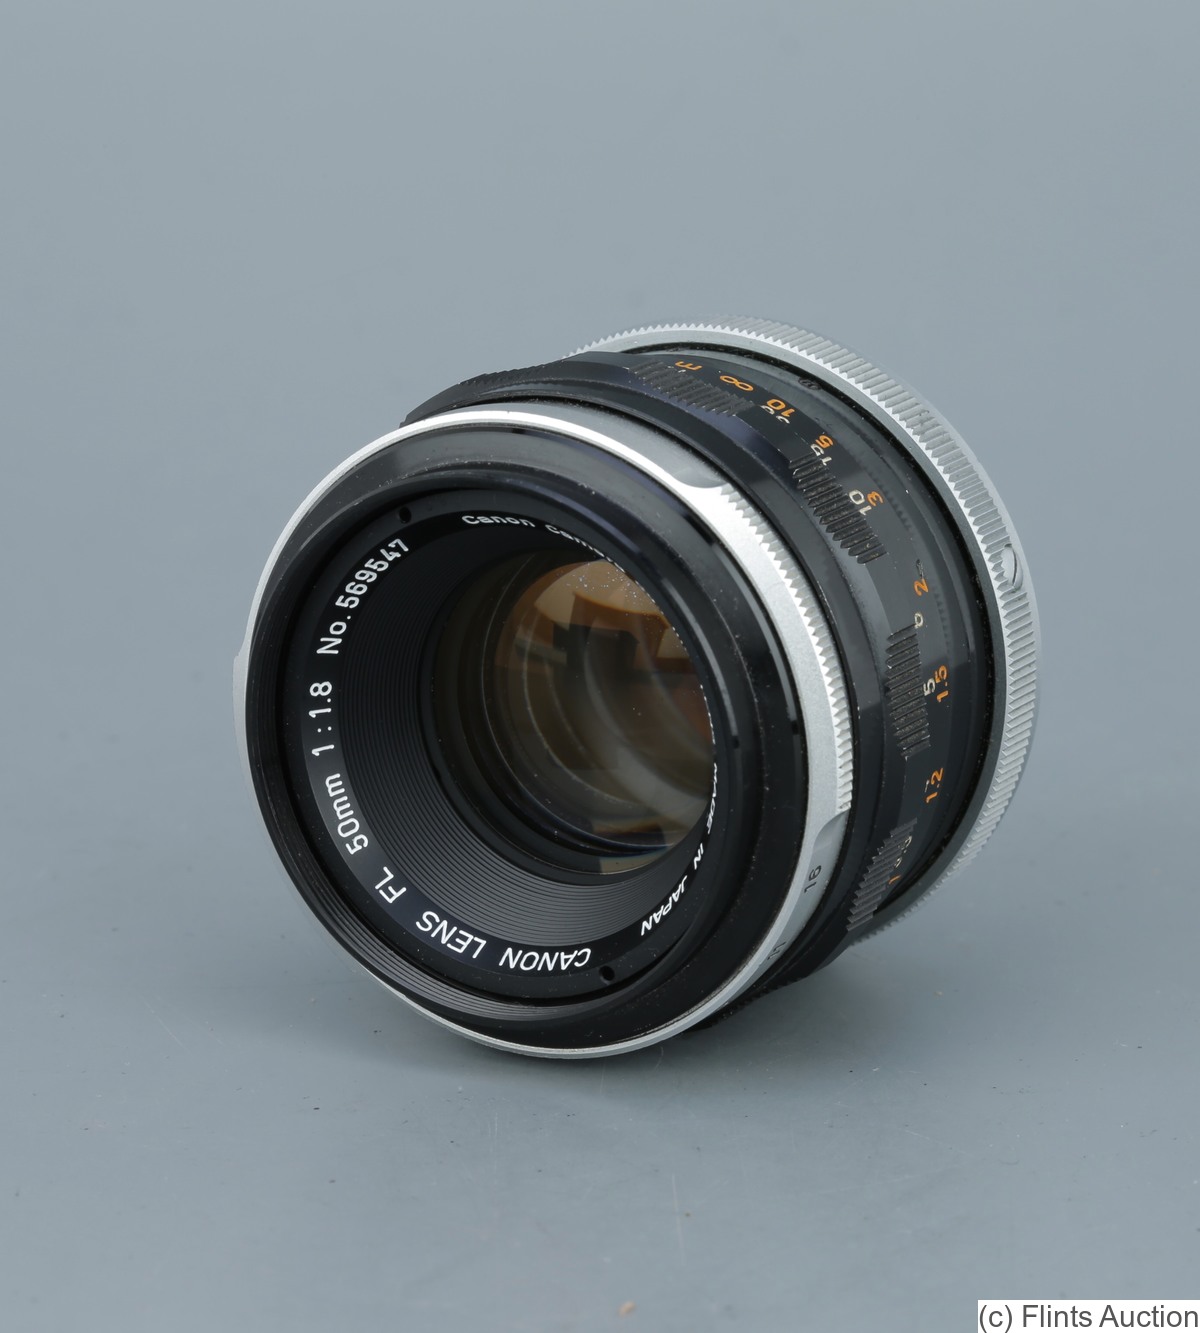 Canon: 50mm (5cm) f1.8 FL camera